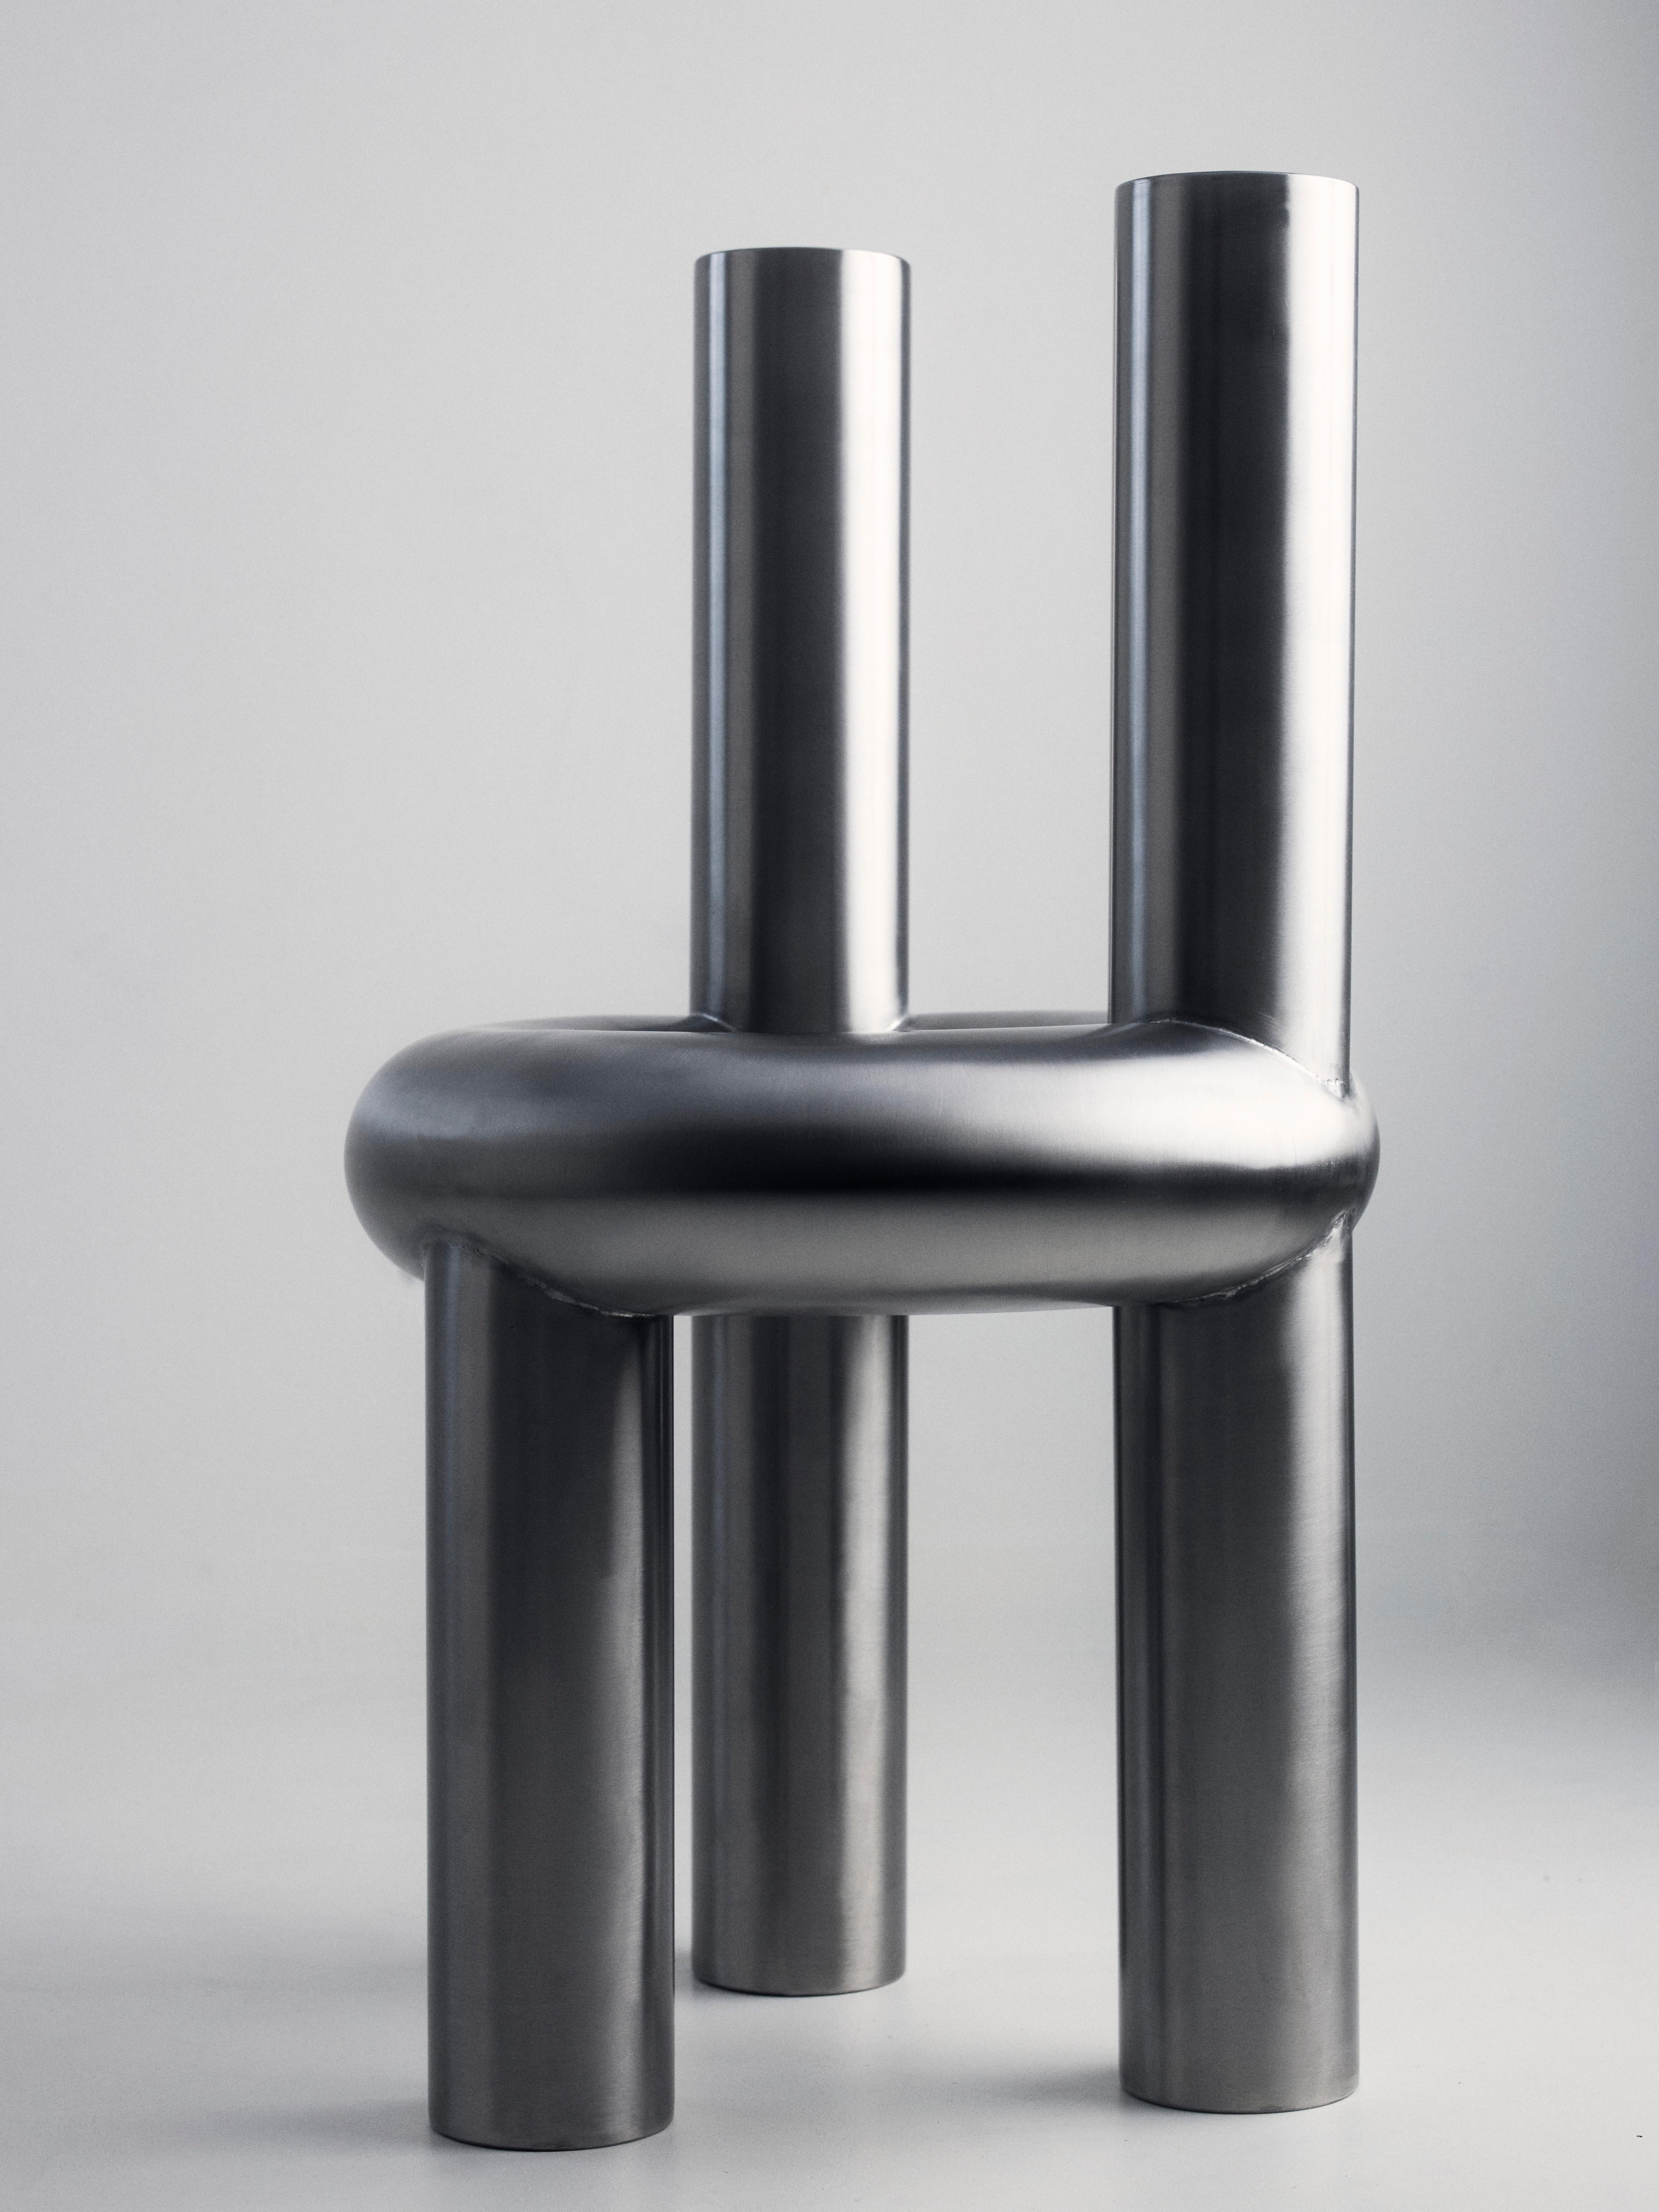 Par Obscure Objects

Conçu par Luisa Pröspel

La chaise chunk associe des formes douces, rondes et légèrement surdimensionnées à de l'acier inoxydable dur et résistant. La surface homogène brossée à la main relie les différentes pièces entre elles